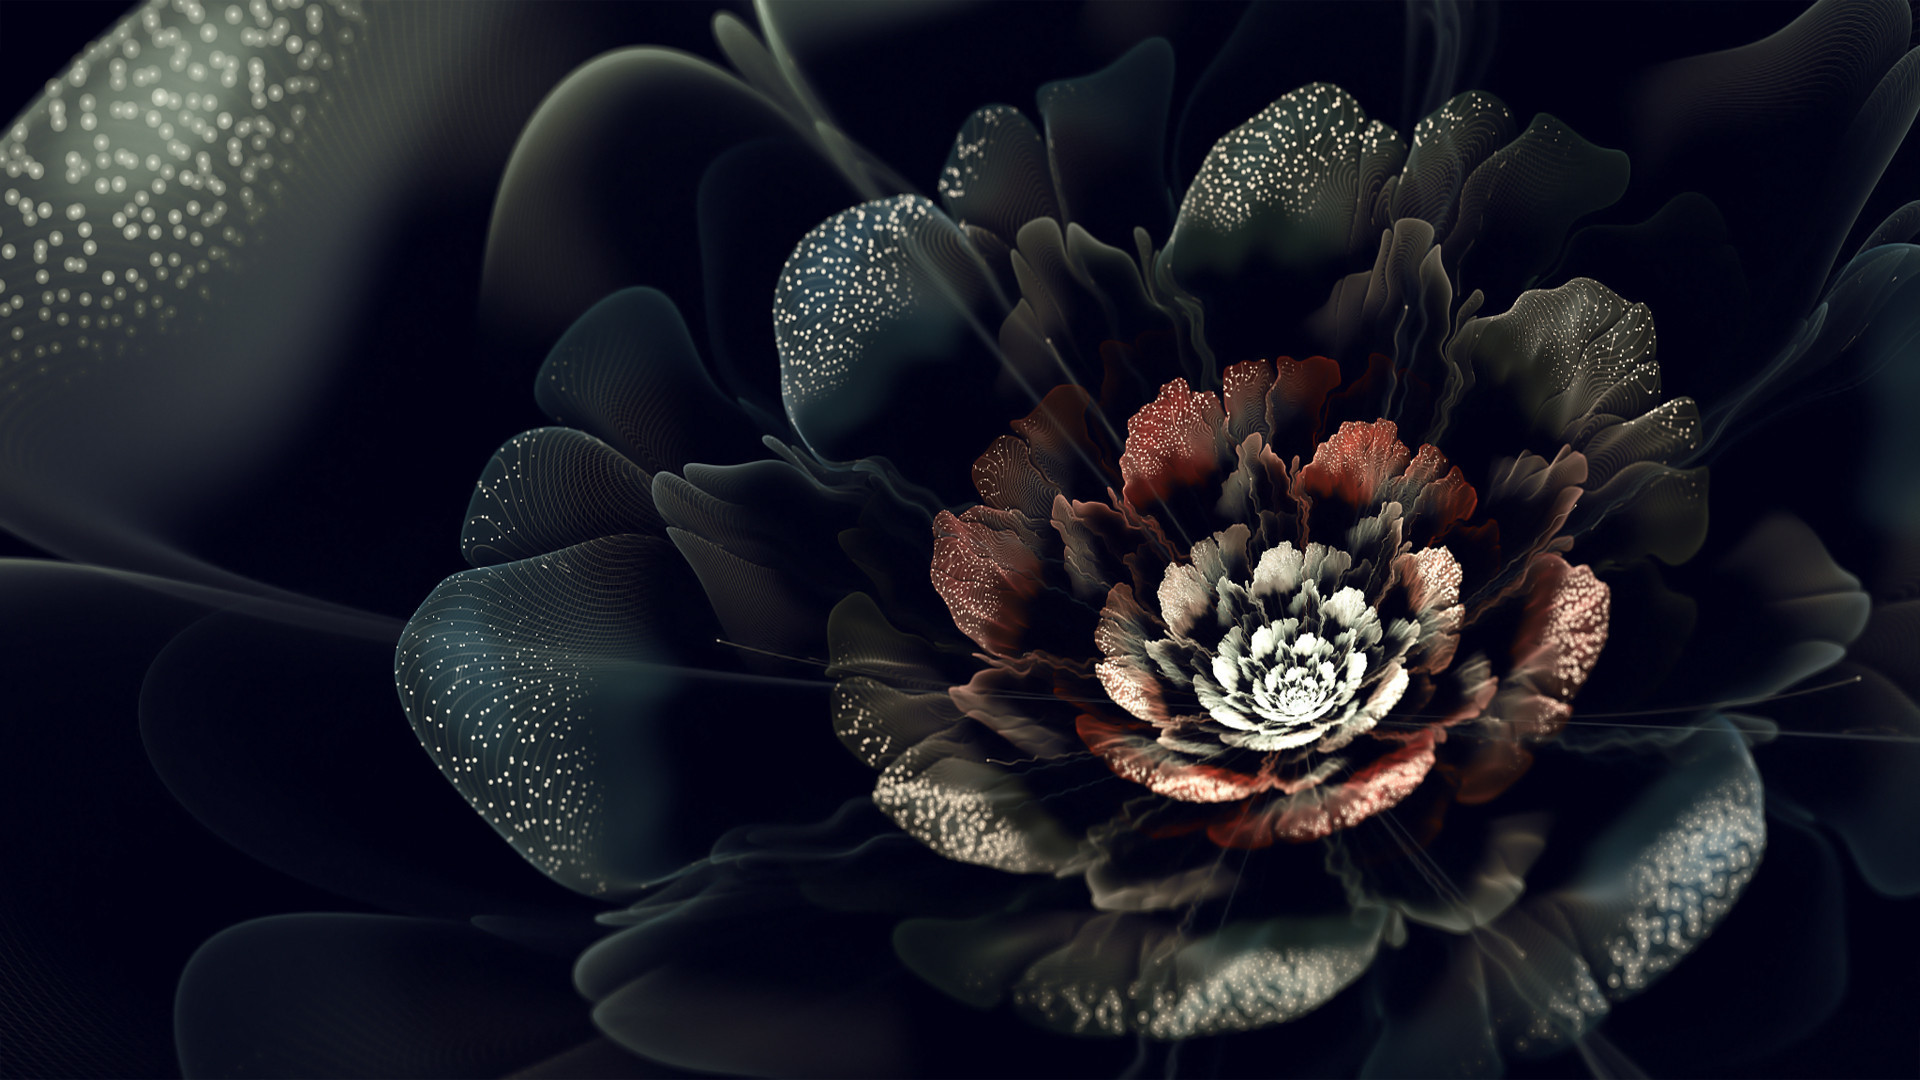 Dark Flower Wallpaper 70 images 